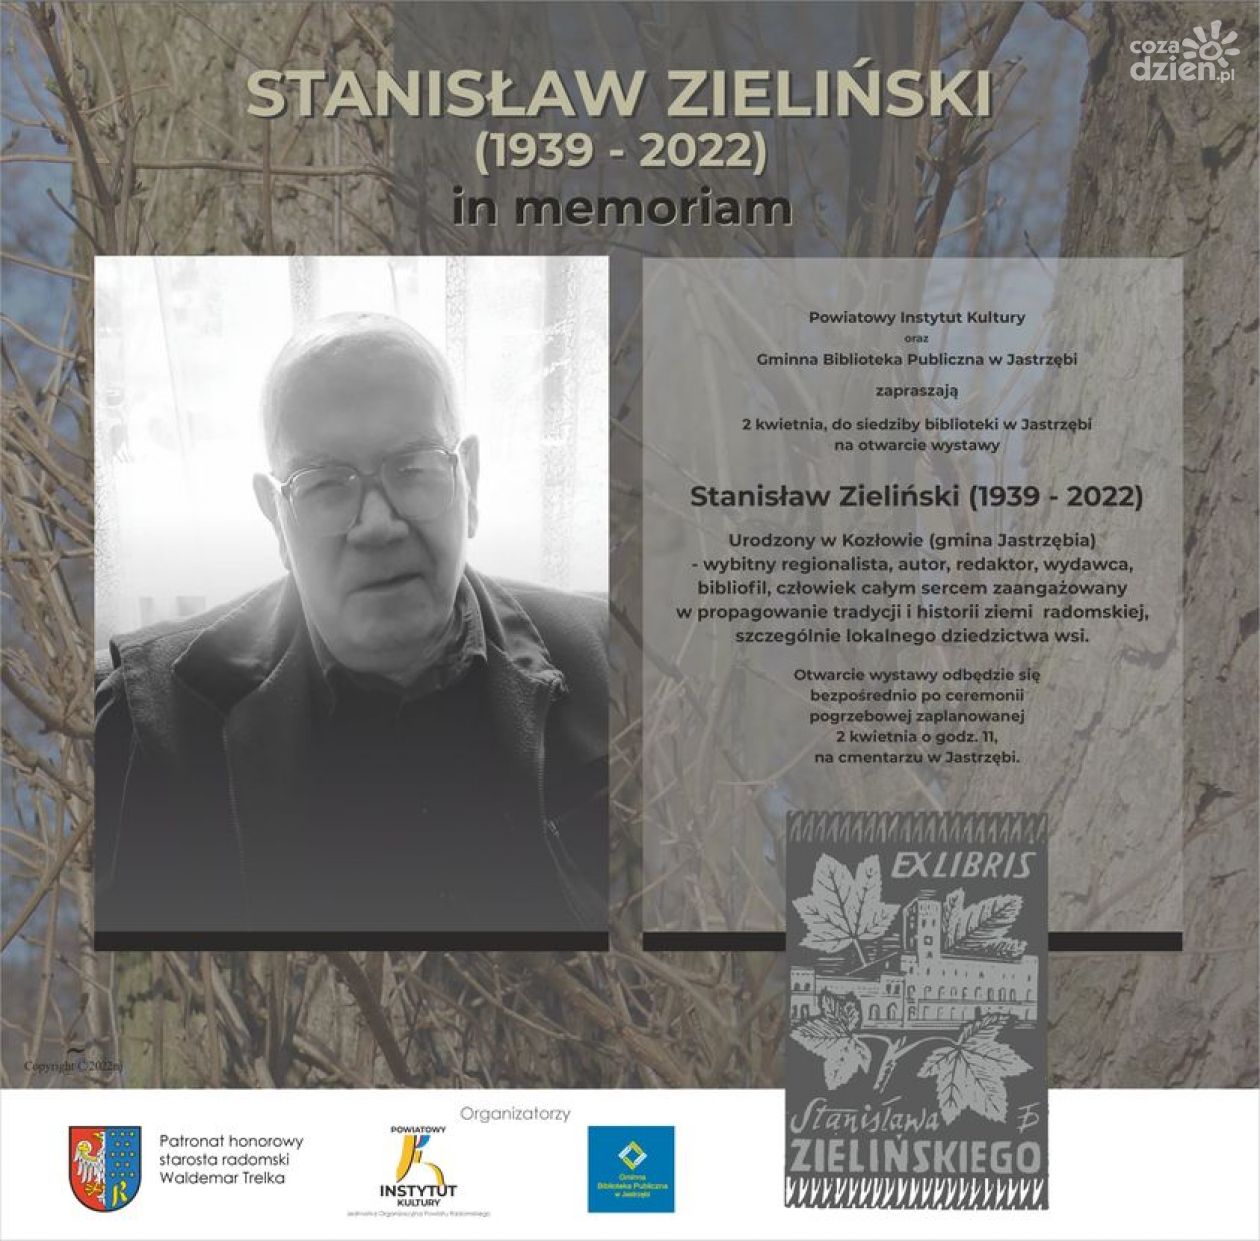 Stanisław Zieliński in memoriam